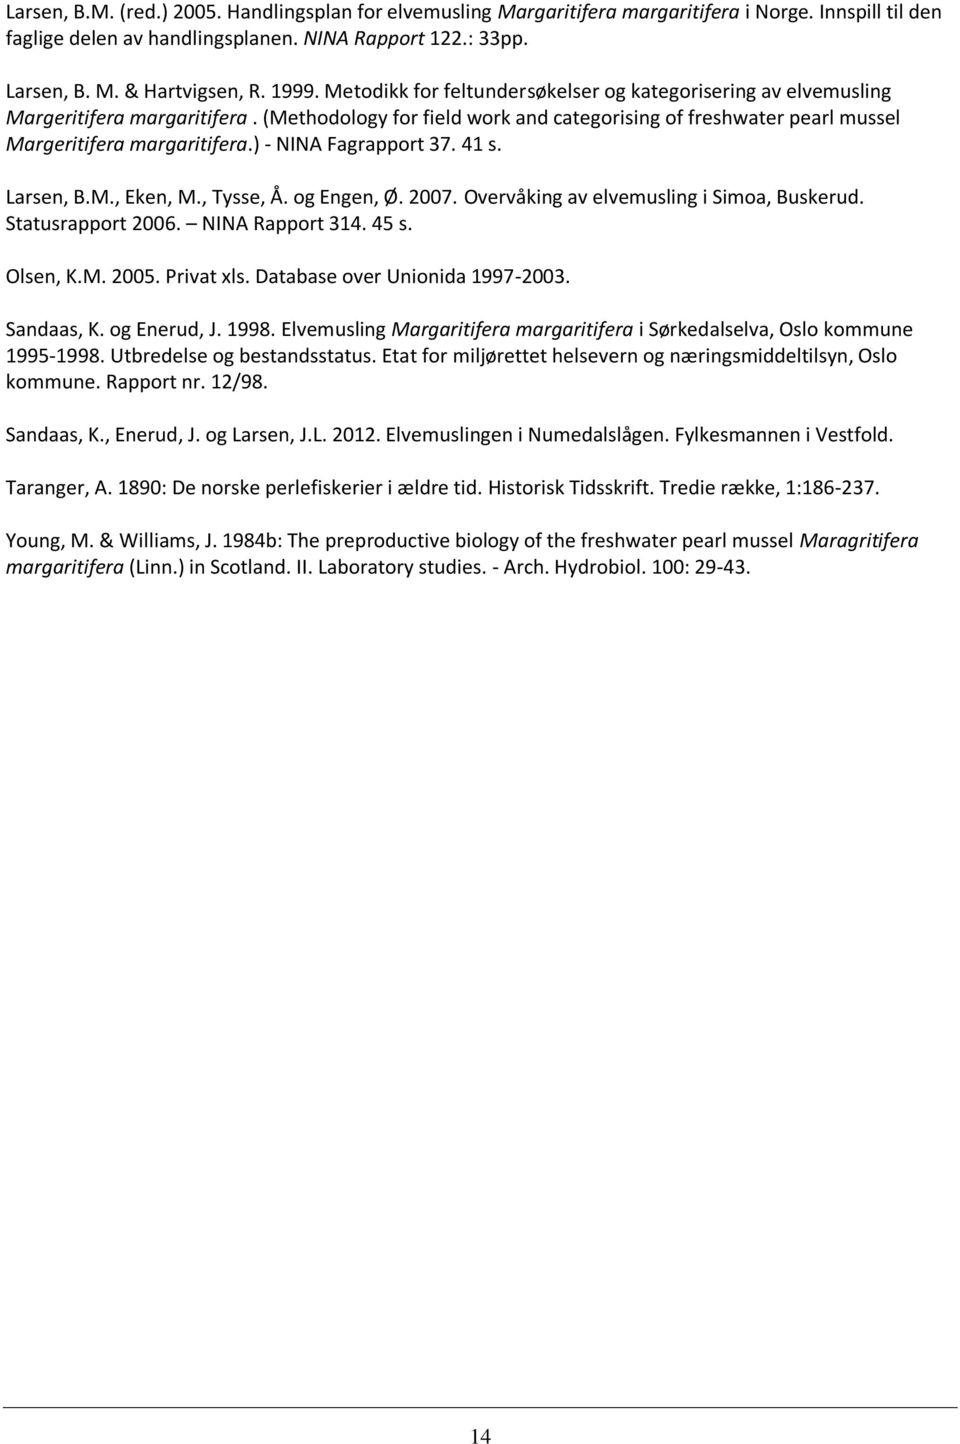 ) - NINA Fagrapport 37. 41 s. Larsen, B.M., Eken, M., Tysse, Å. og Engen, Ø. 2007. Overvåking av elvemusling i Simoa, Buskerud. Statusrapport 2006. NINA Rapport 314. 45 s. Olsen, K.M. 2005.